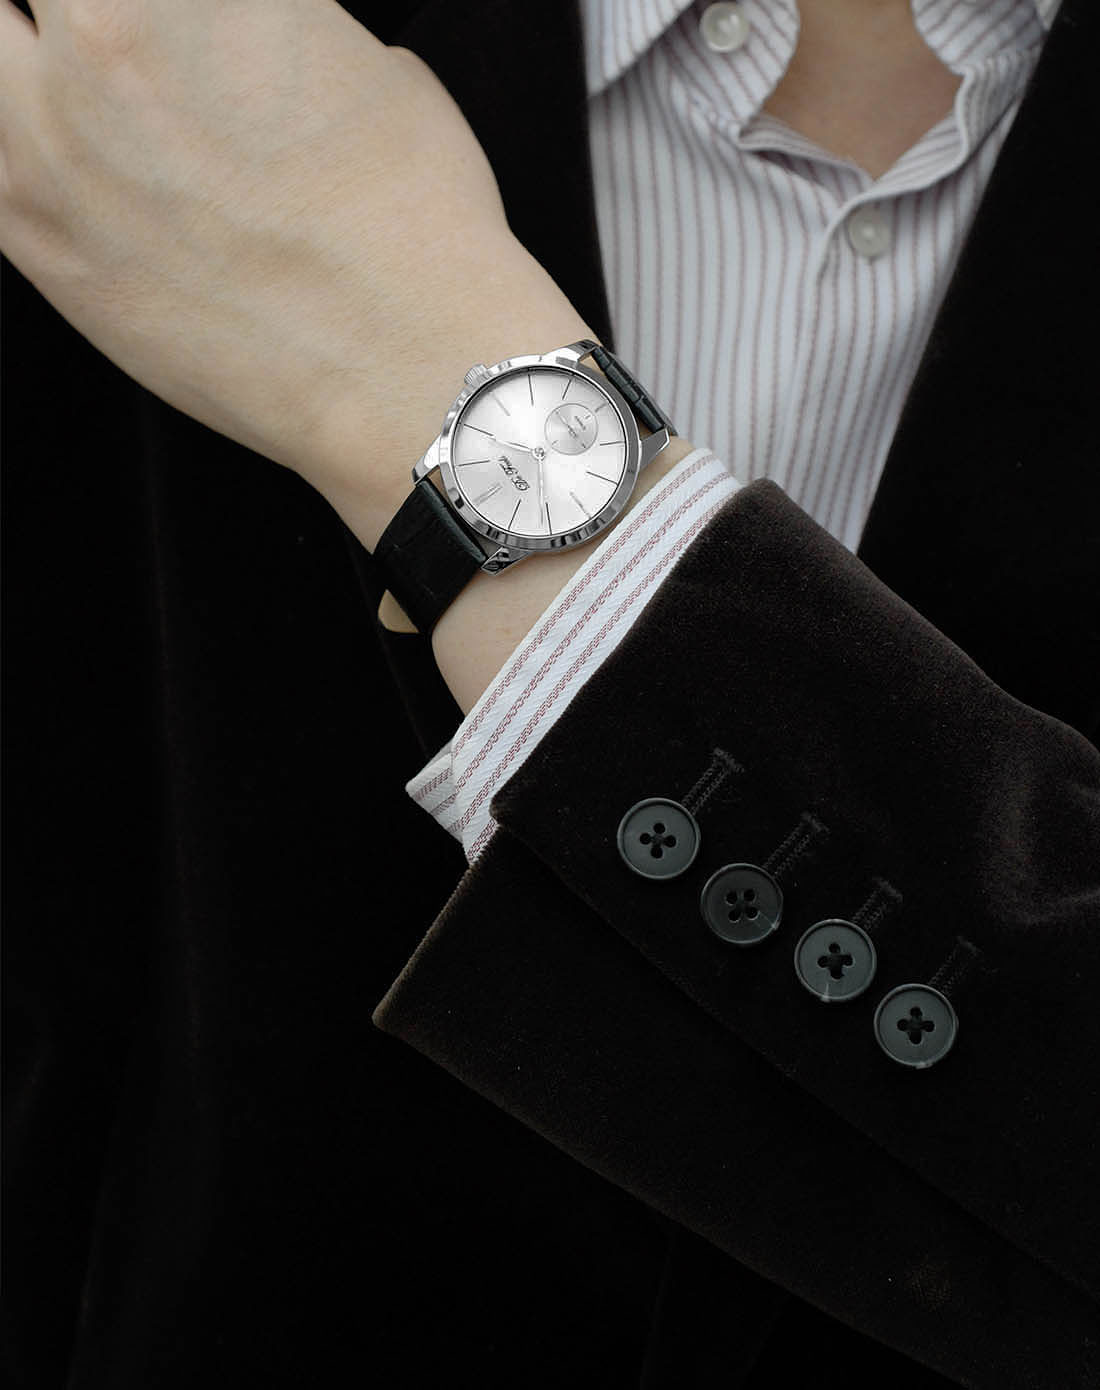 2、男士戴哪款手表好看？腰带还是金属腰带？什么颜色的表盘？ 